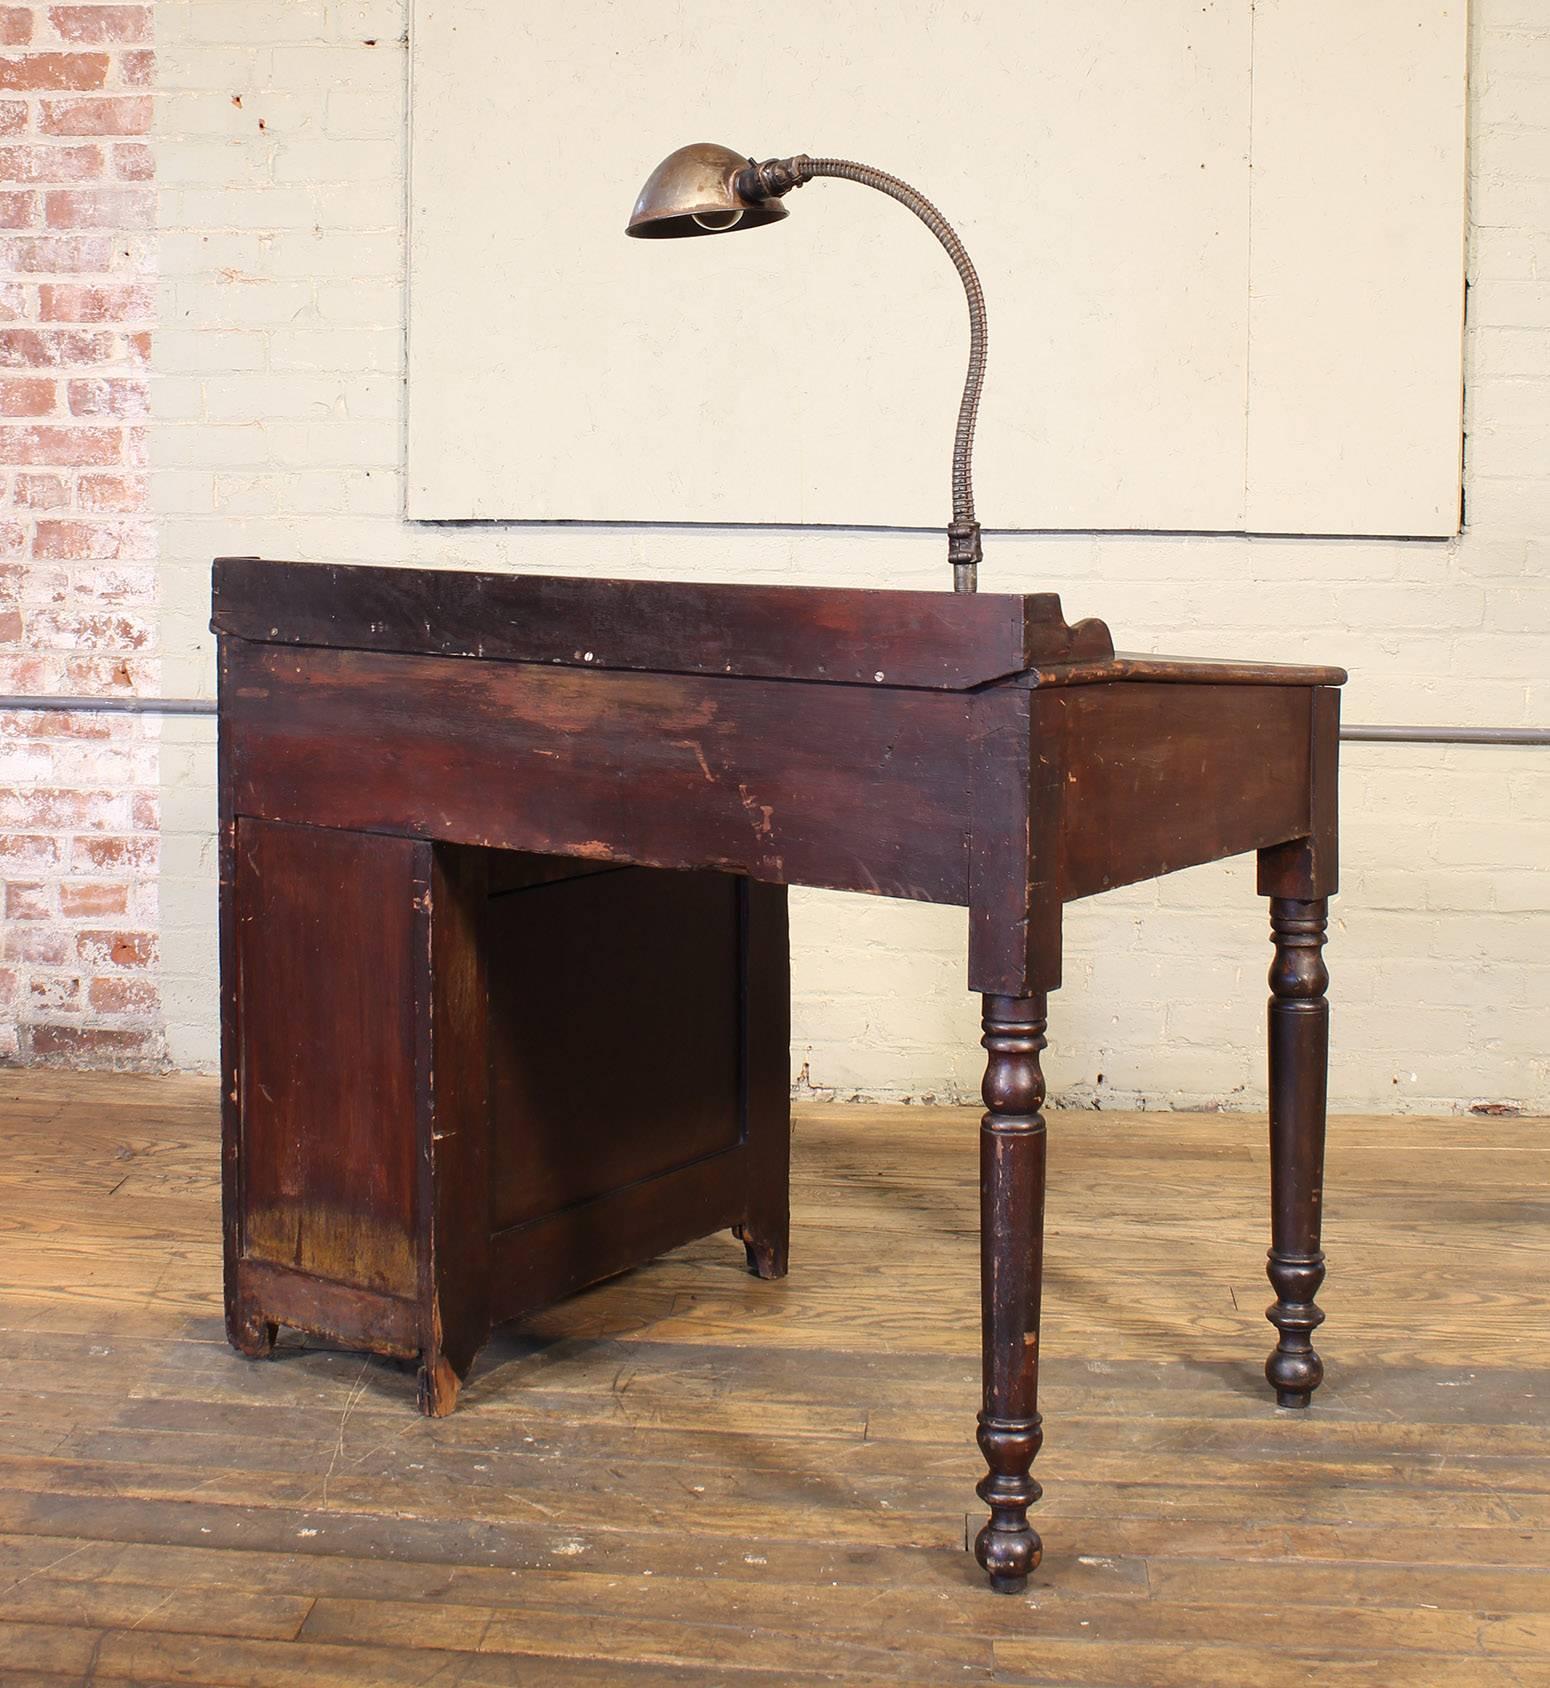 Vintage Industrial Clerk's Desk Workbench with Adjustable Goose-Neck Task Light 1